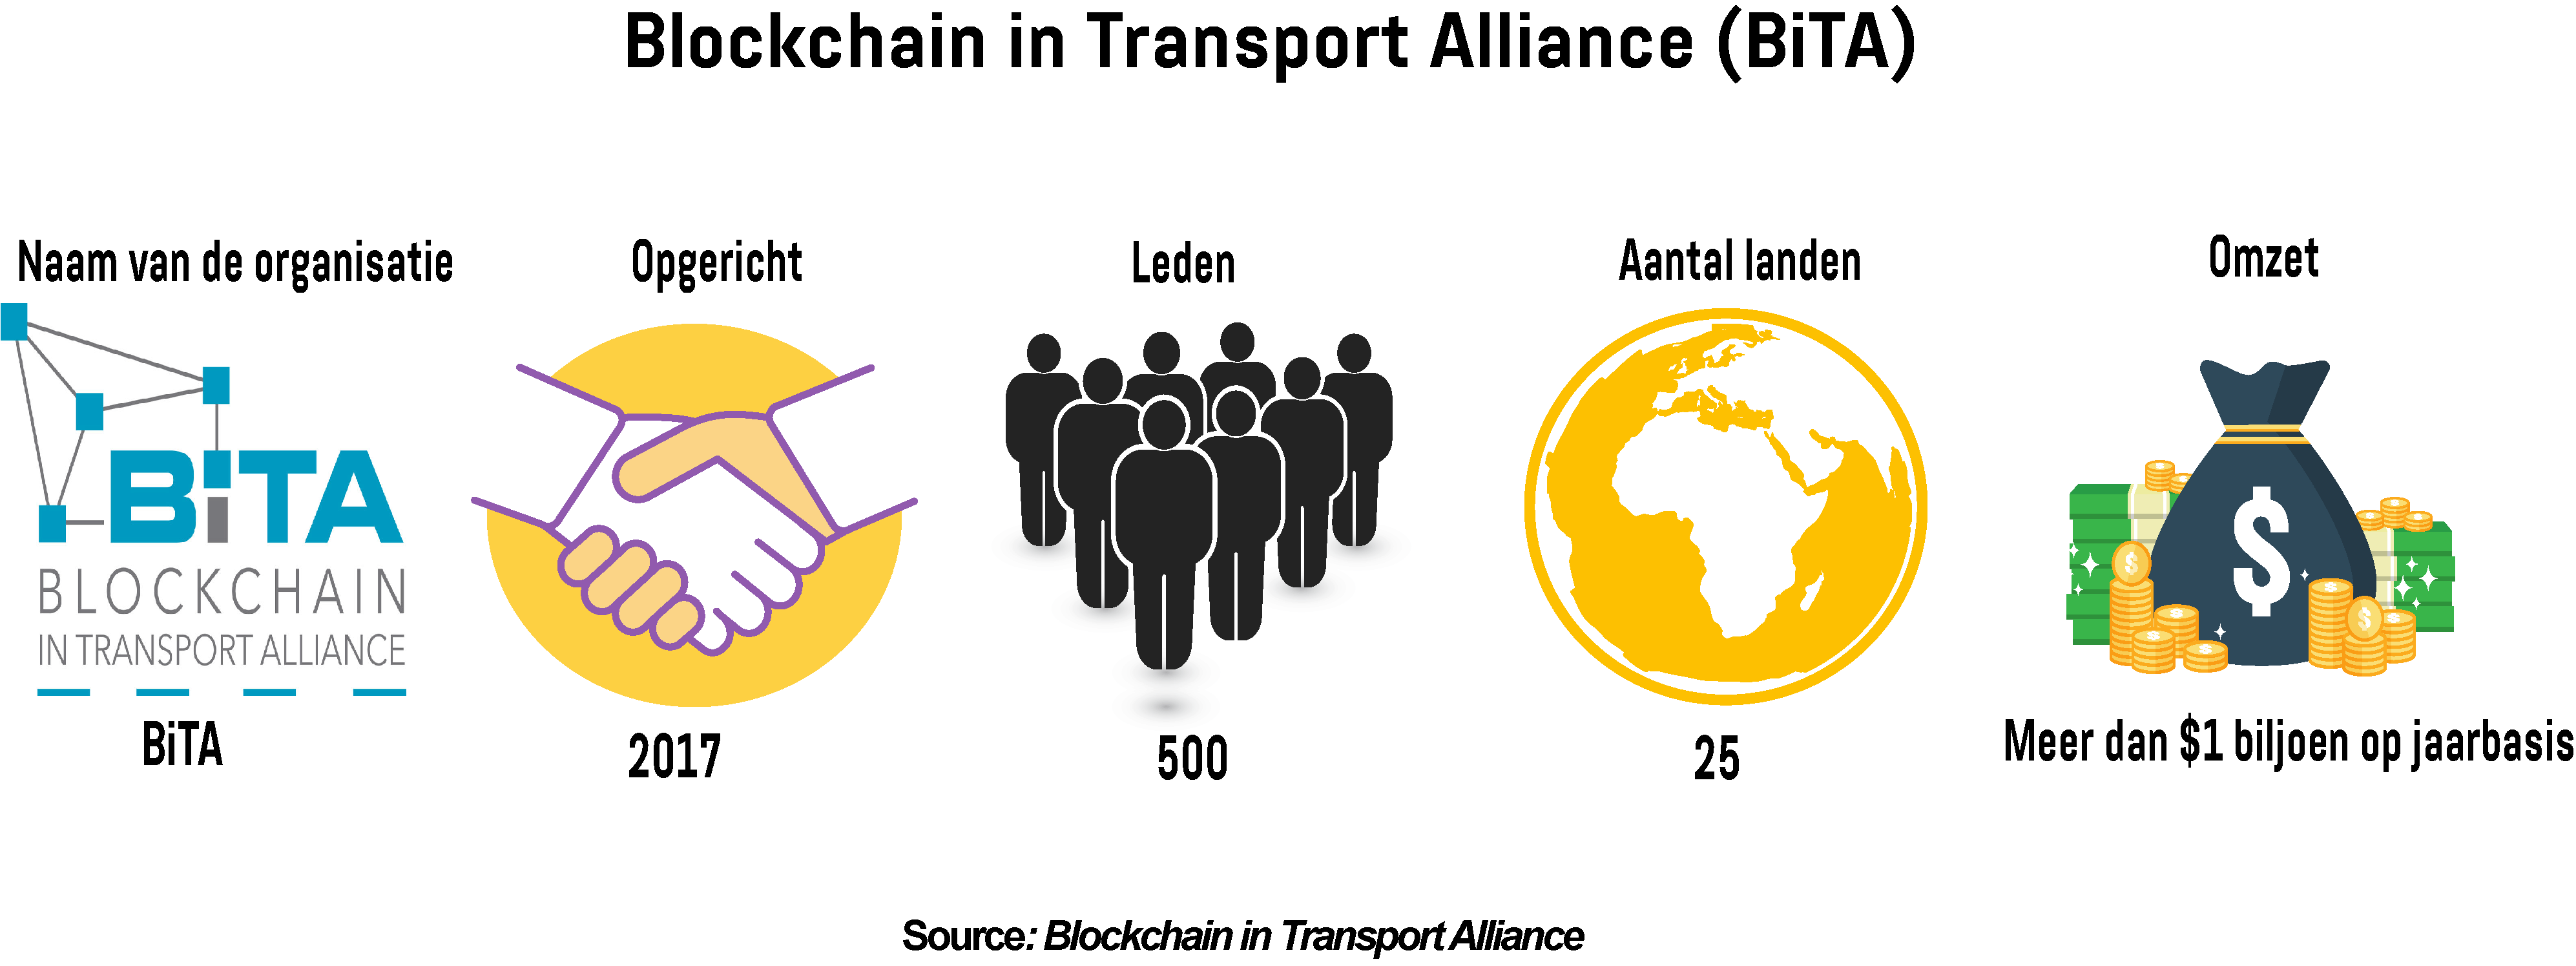 Infographic toont belangrijke statistieken van Blockchain in Transport Alliance (BiTA)